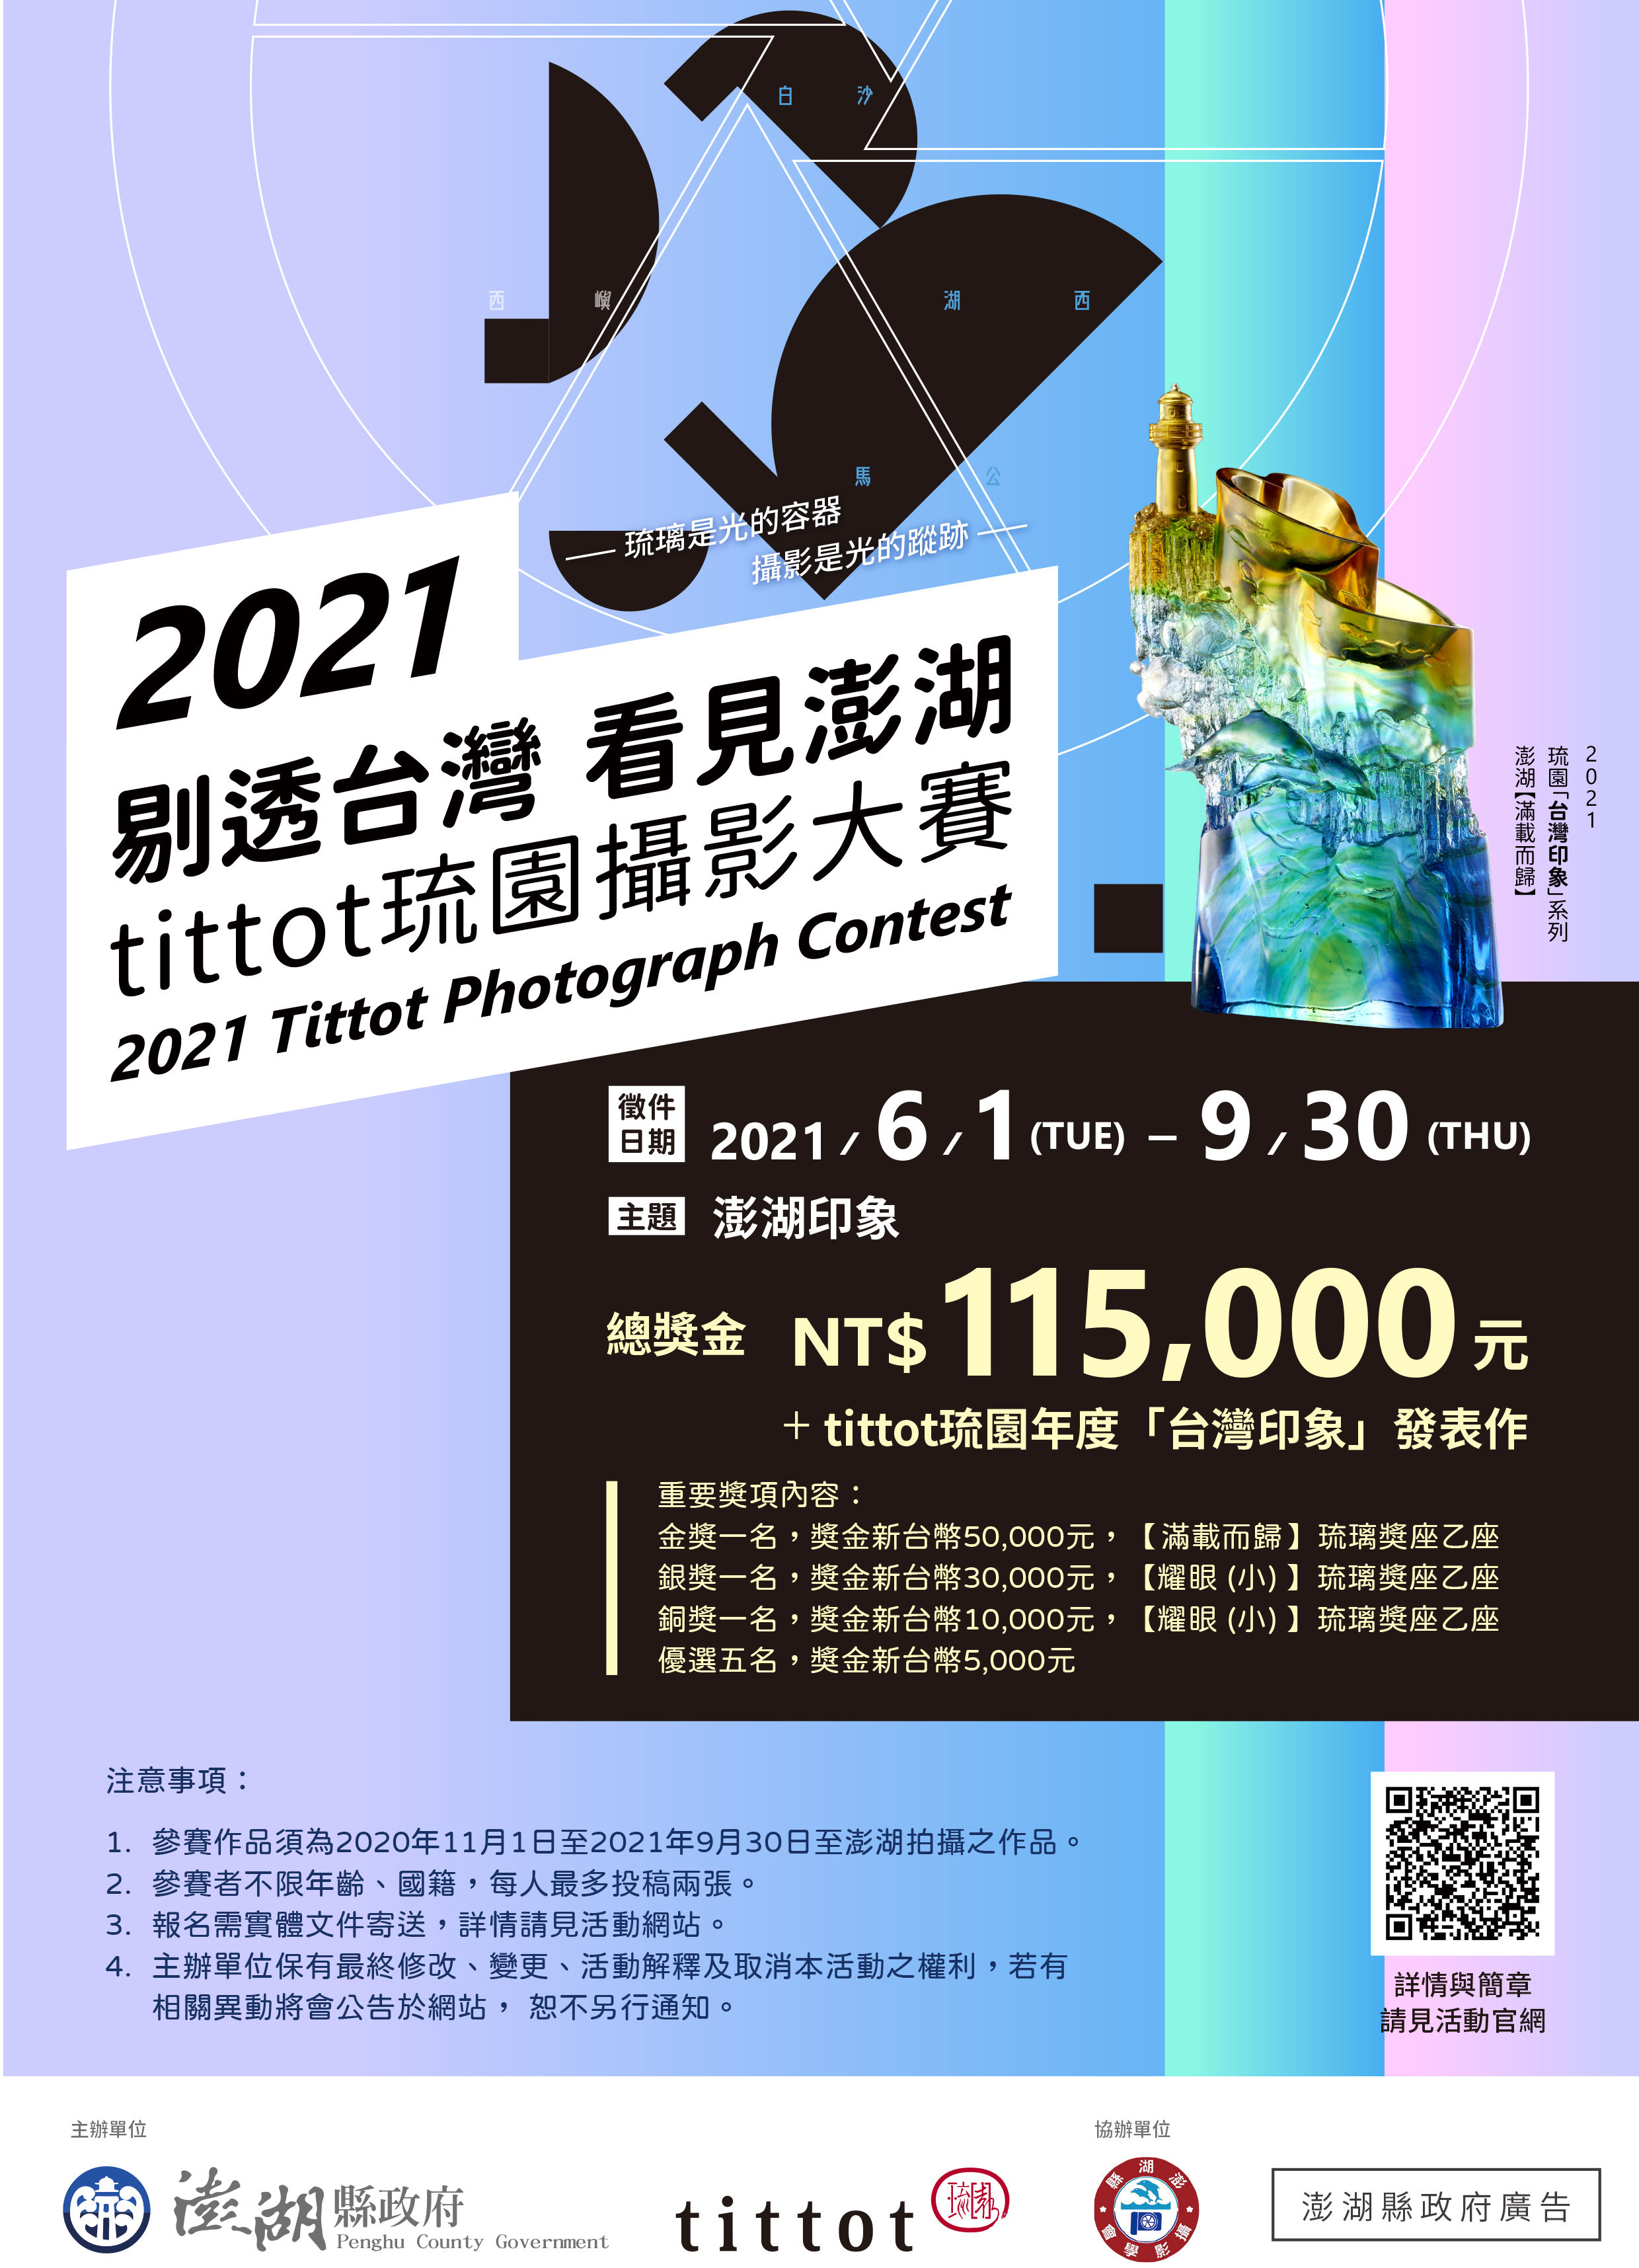 2021剔透台灣 看見澎湖攝影大賽-來去澎湖小旅行兼拍照